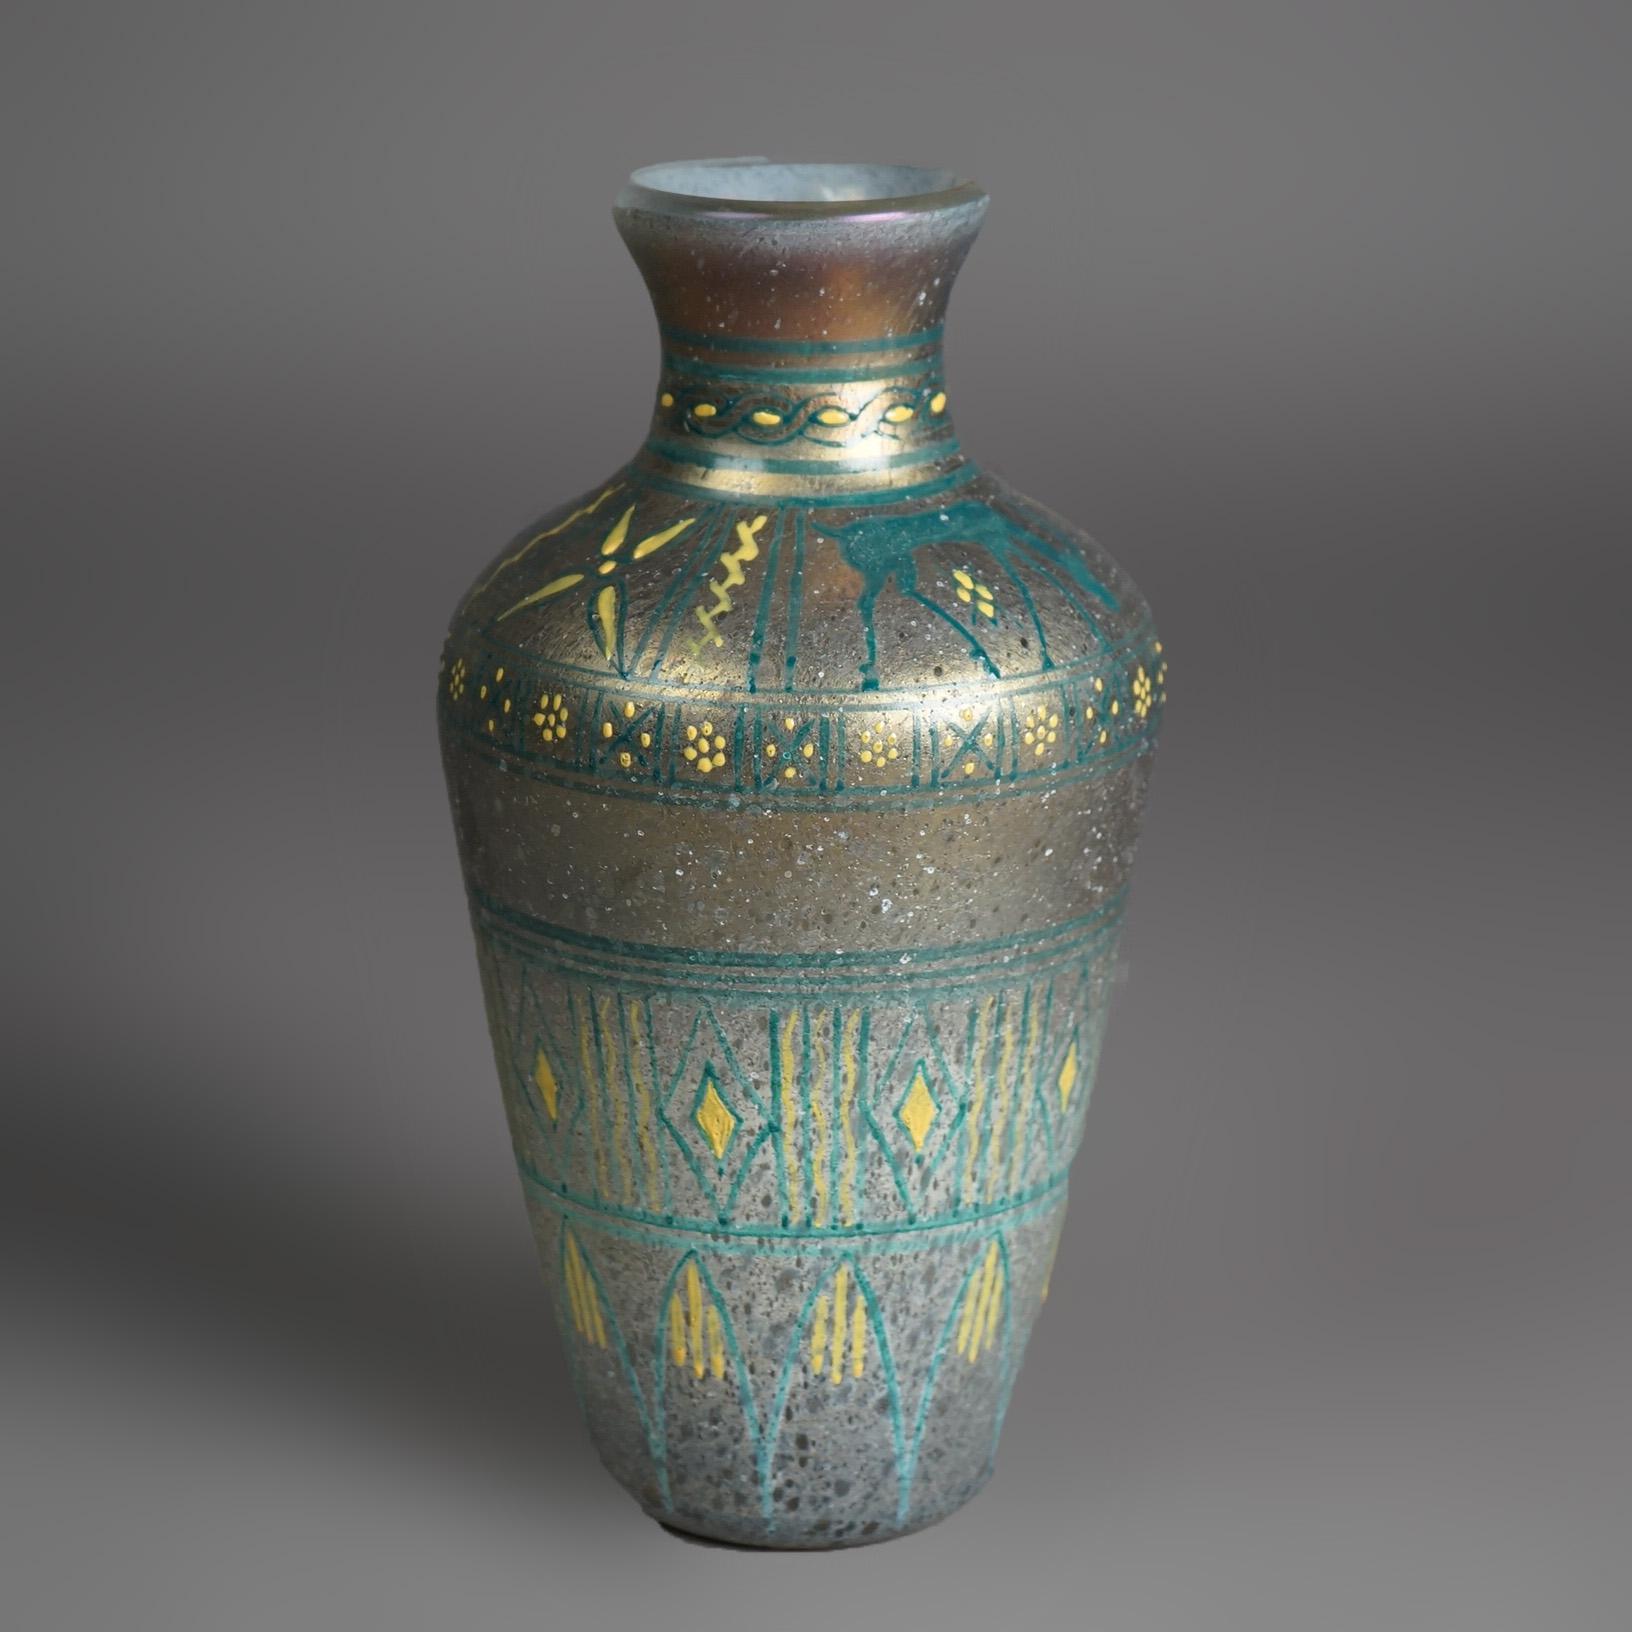 Eine antike Mount Washington Egyptian Revival figurale Vase bietet Kunstglas mit handgemaltem Stammesmotiv und Antilopenfigur, um 1900

Maße - 9,5 